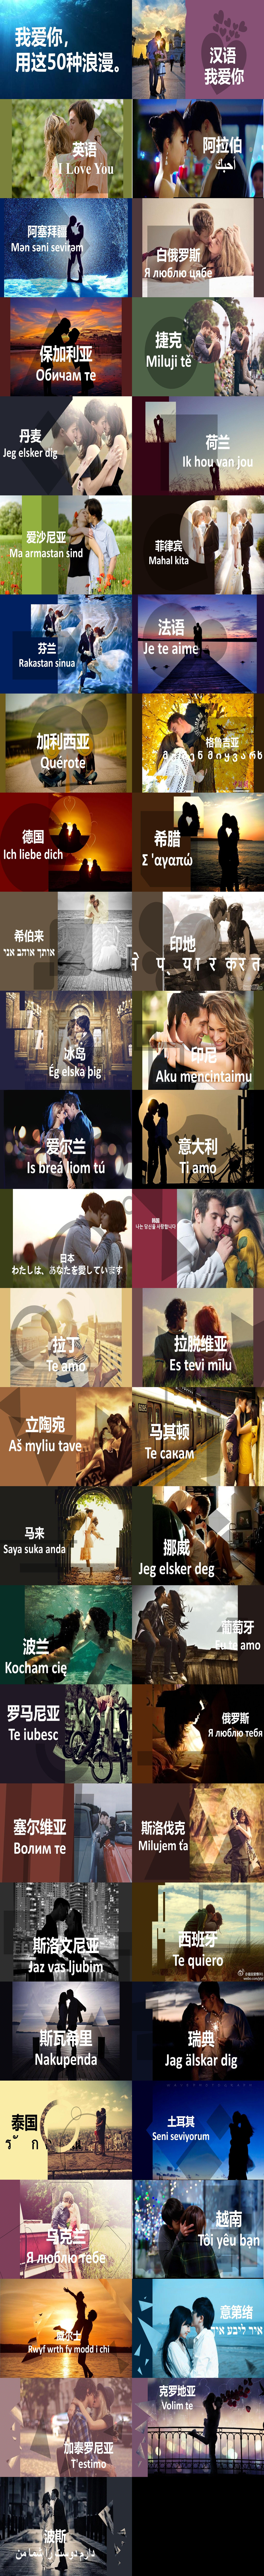 用50种语言说“我爱你”PPT下载（2）